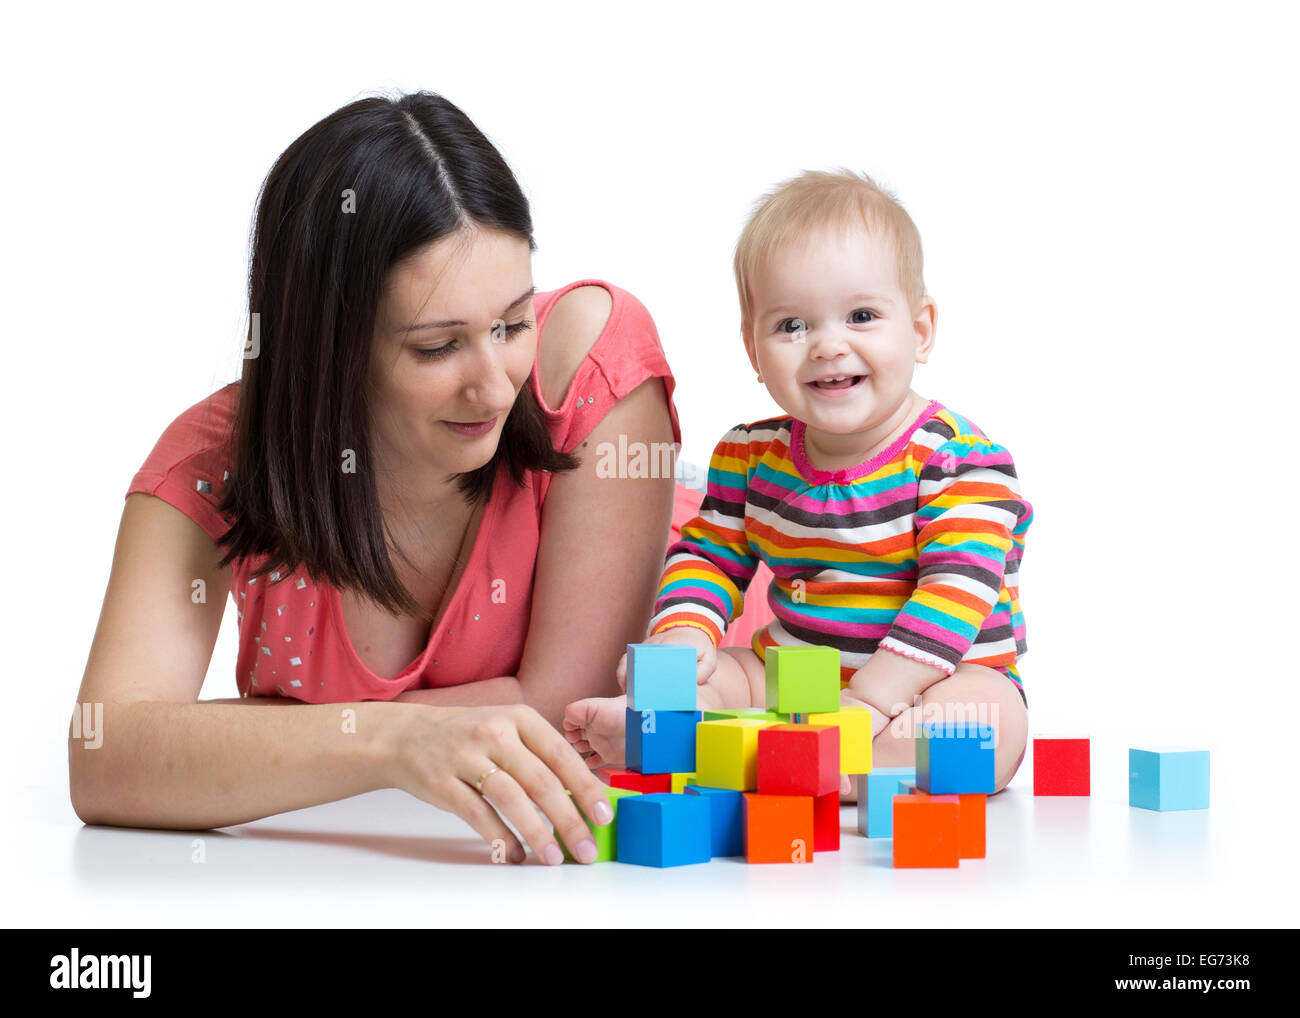 La mère et l'enfant jouer avec des blocs de construction toy isolated on white Banque D'Images